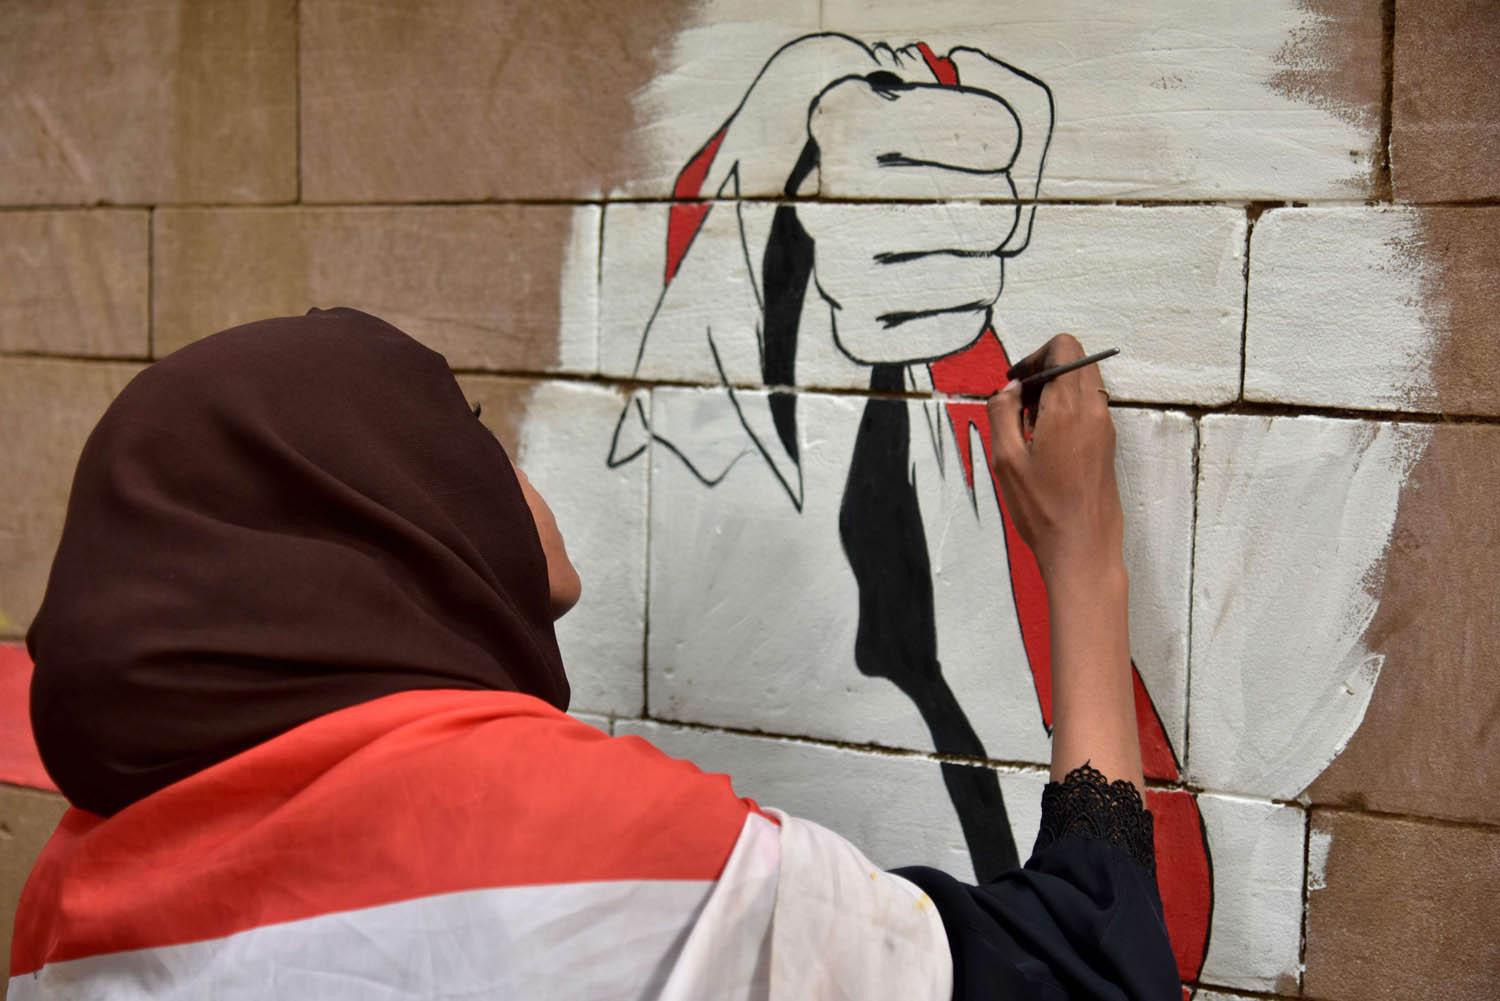 سودانية ترسم غرافيتي على جدار في الخرطوم